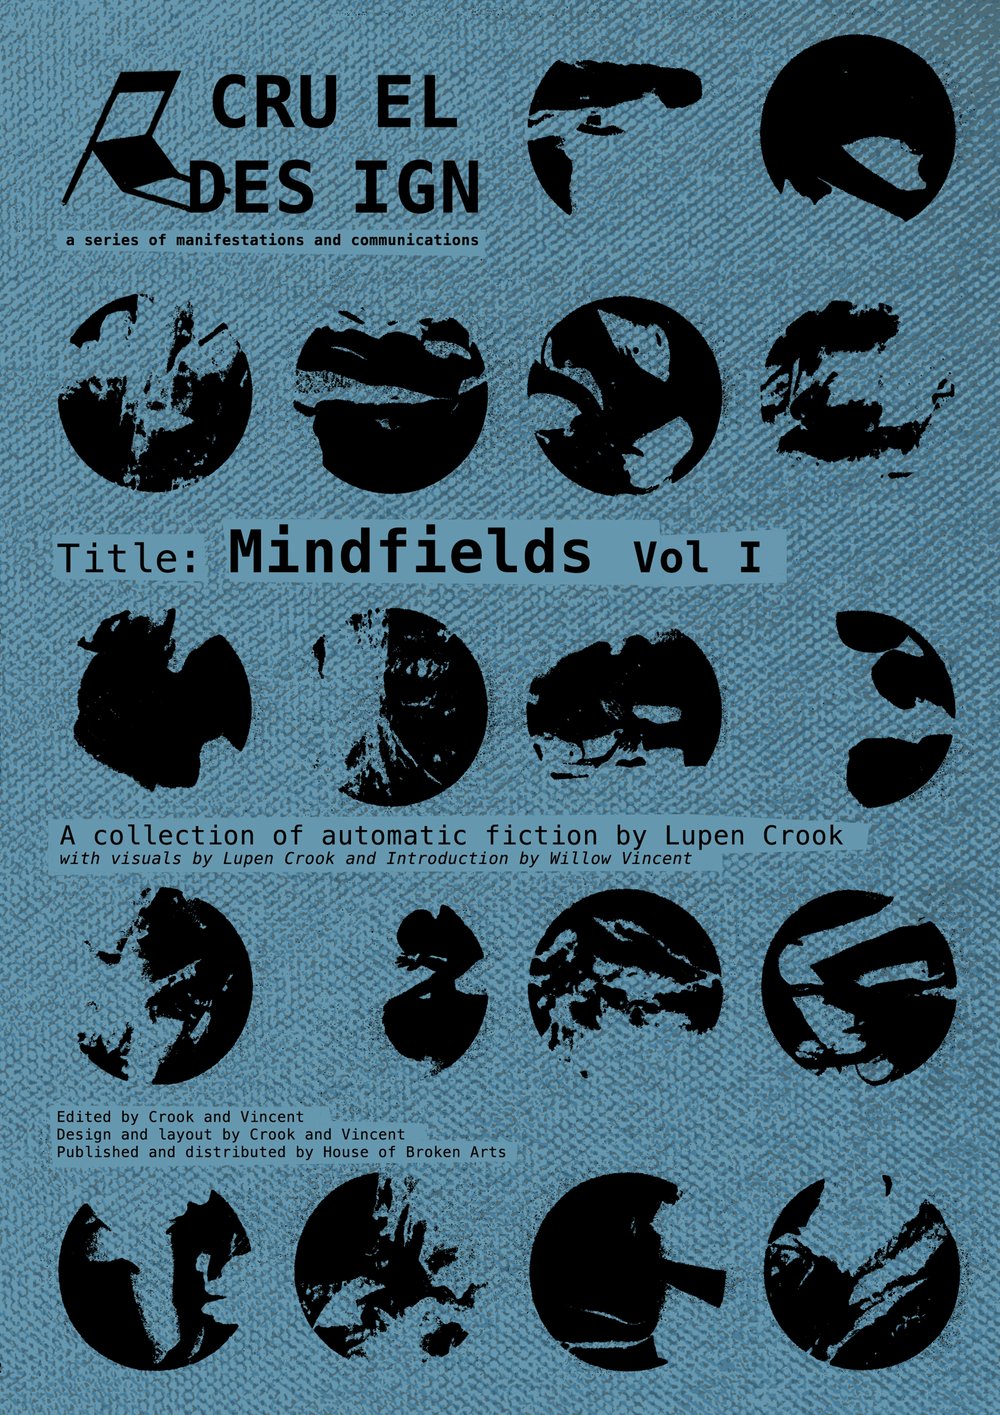 Cruel Design - Mindfields Vol I